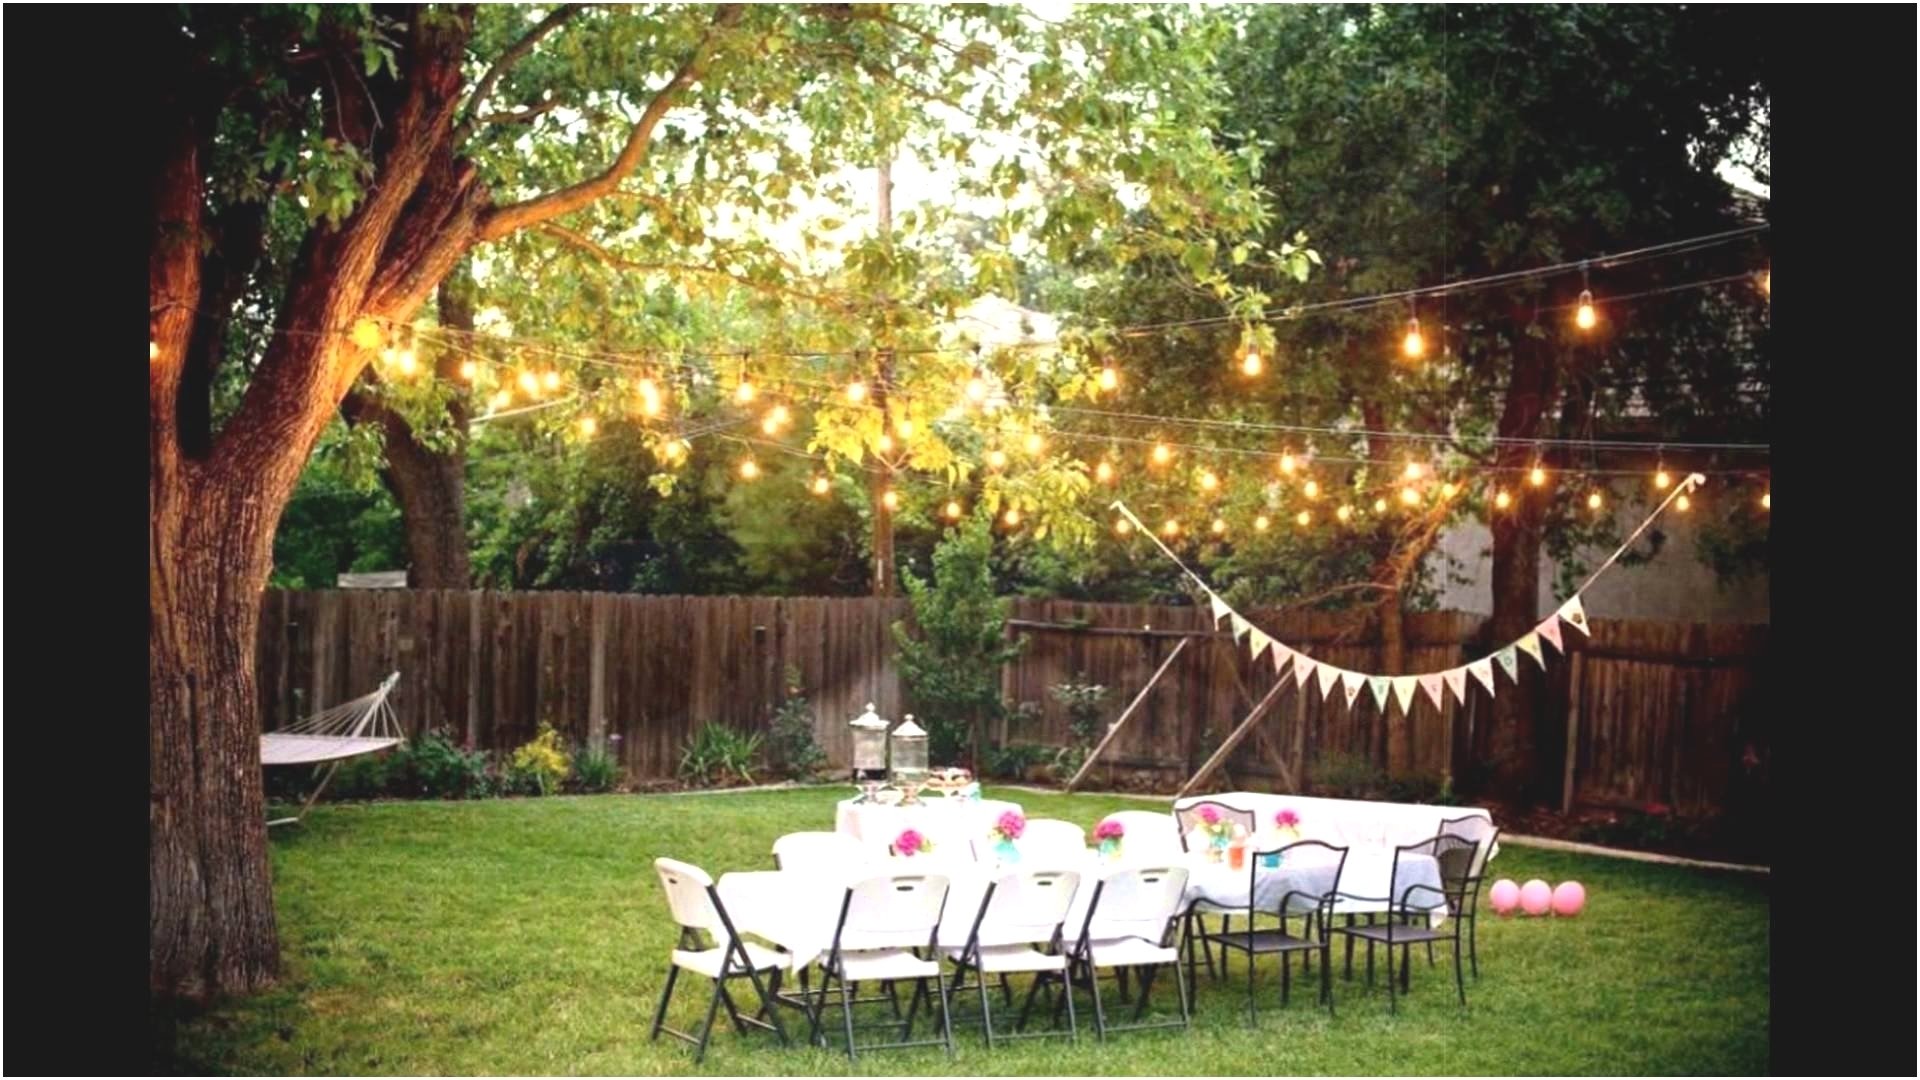 10 Wonderful Backyard Wedding Reception Ideas On A Budget fresh backyard wedding ideas e280a2 javidecor 2022